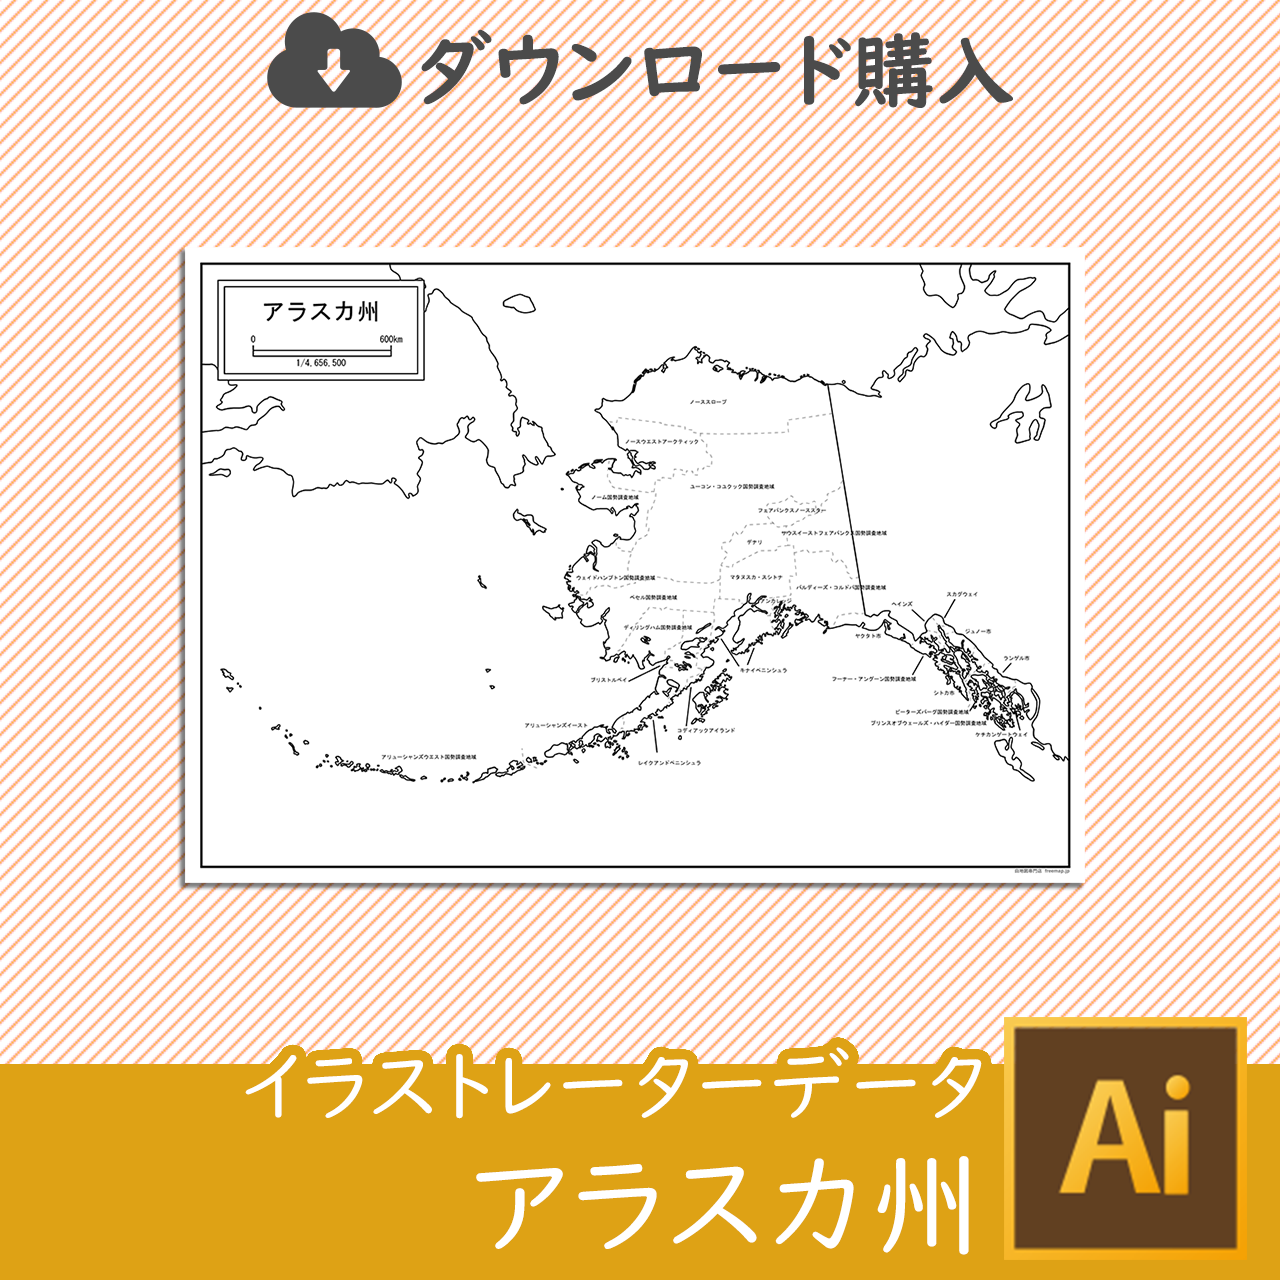 アラスカ州のaiデータのサムネイル画像